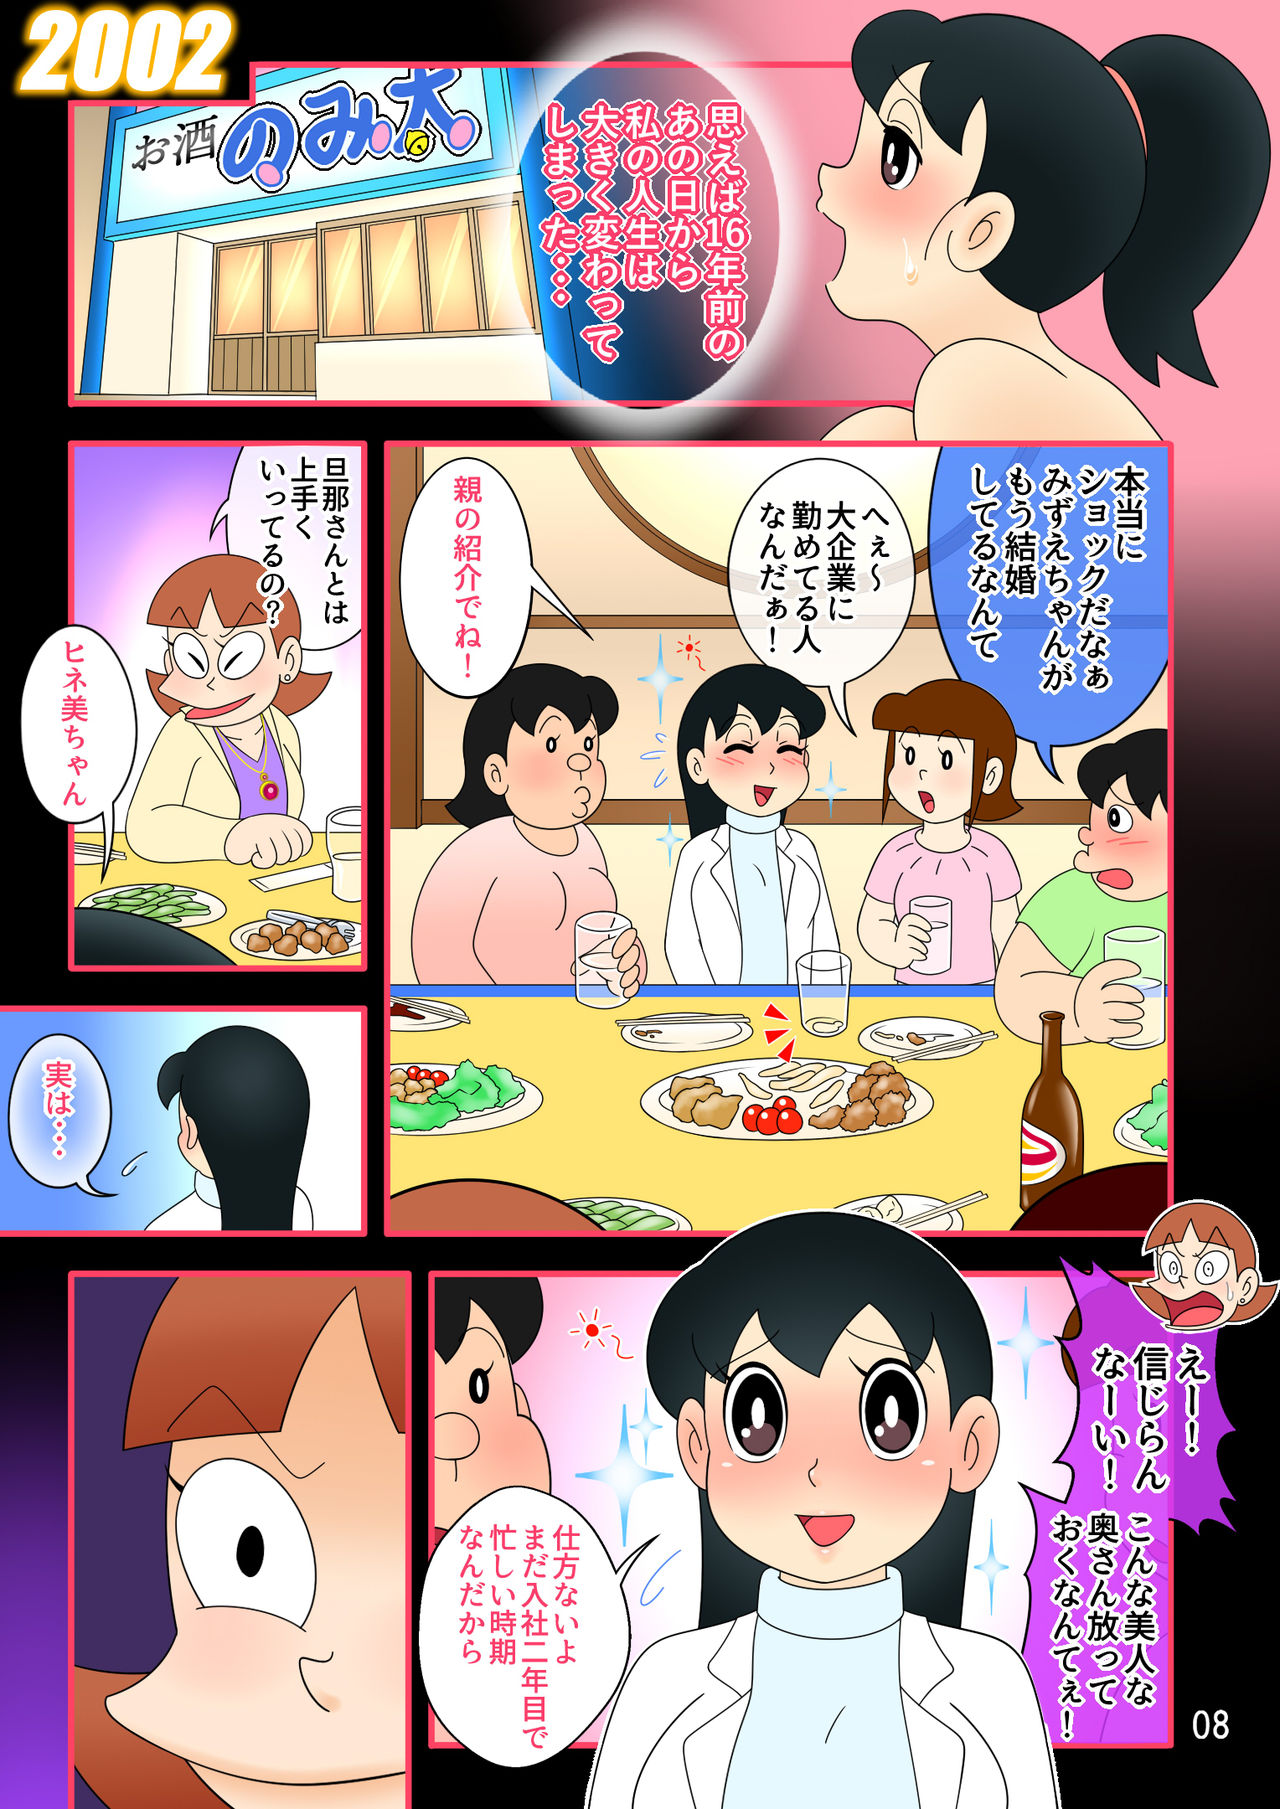 (Ho kuchi☆nanatsuboshi-chū) Yokubō kaihō taimu mashin aratame [mizu ka mama-hen] kako kaihen! Furin taku tamago& oyako dōji-ko-tsukuri (Doraemon) page 8 full